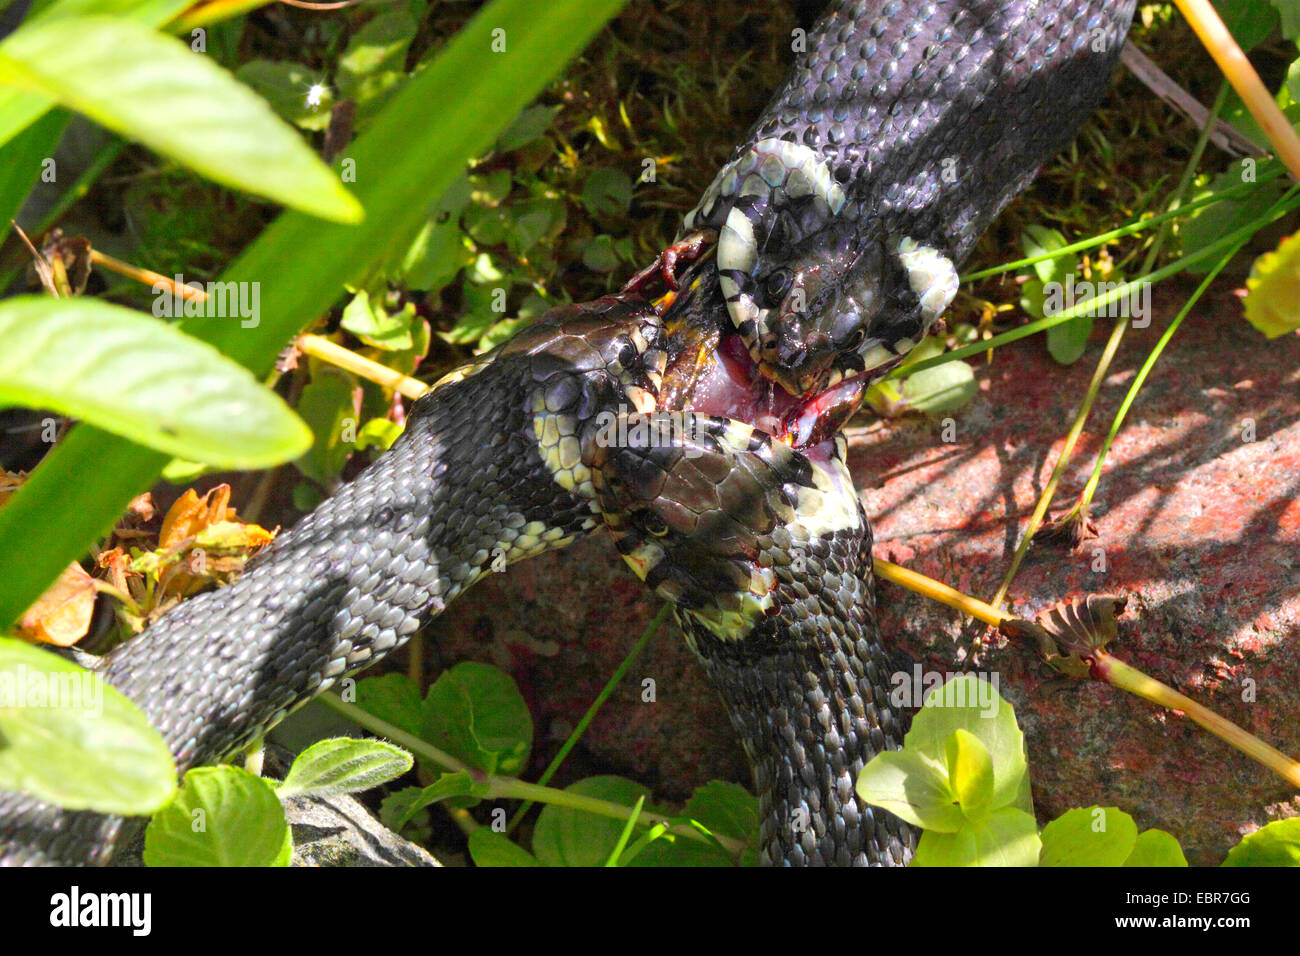 Biscia dal collare (Natrix natrix), serie immagine 2, tre serpenti in lotta per una rana, Germania, Meclemburgo-Pomerania Occidentale Foto Stock